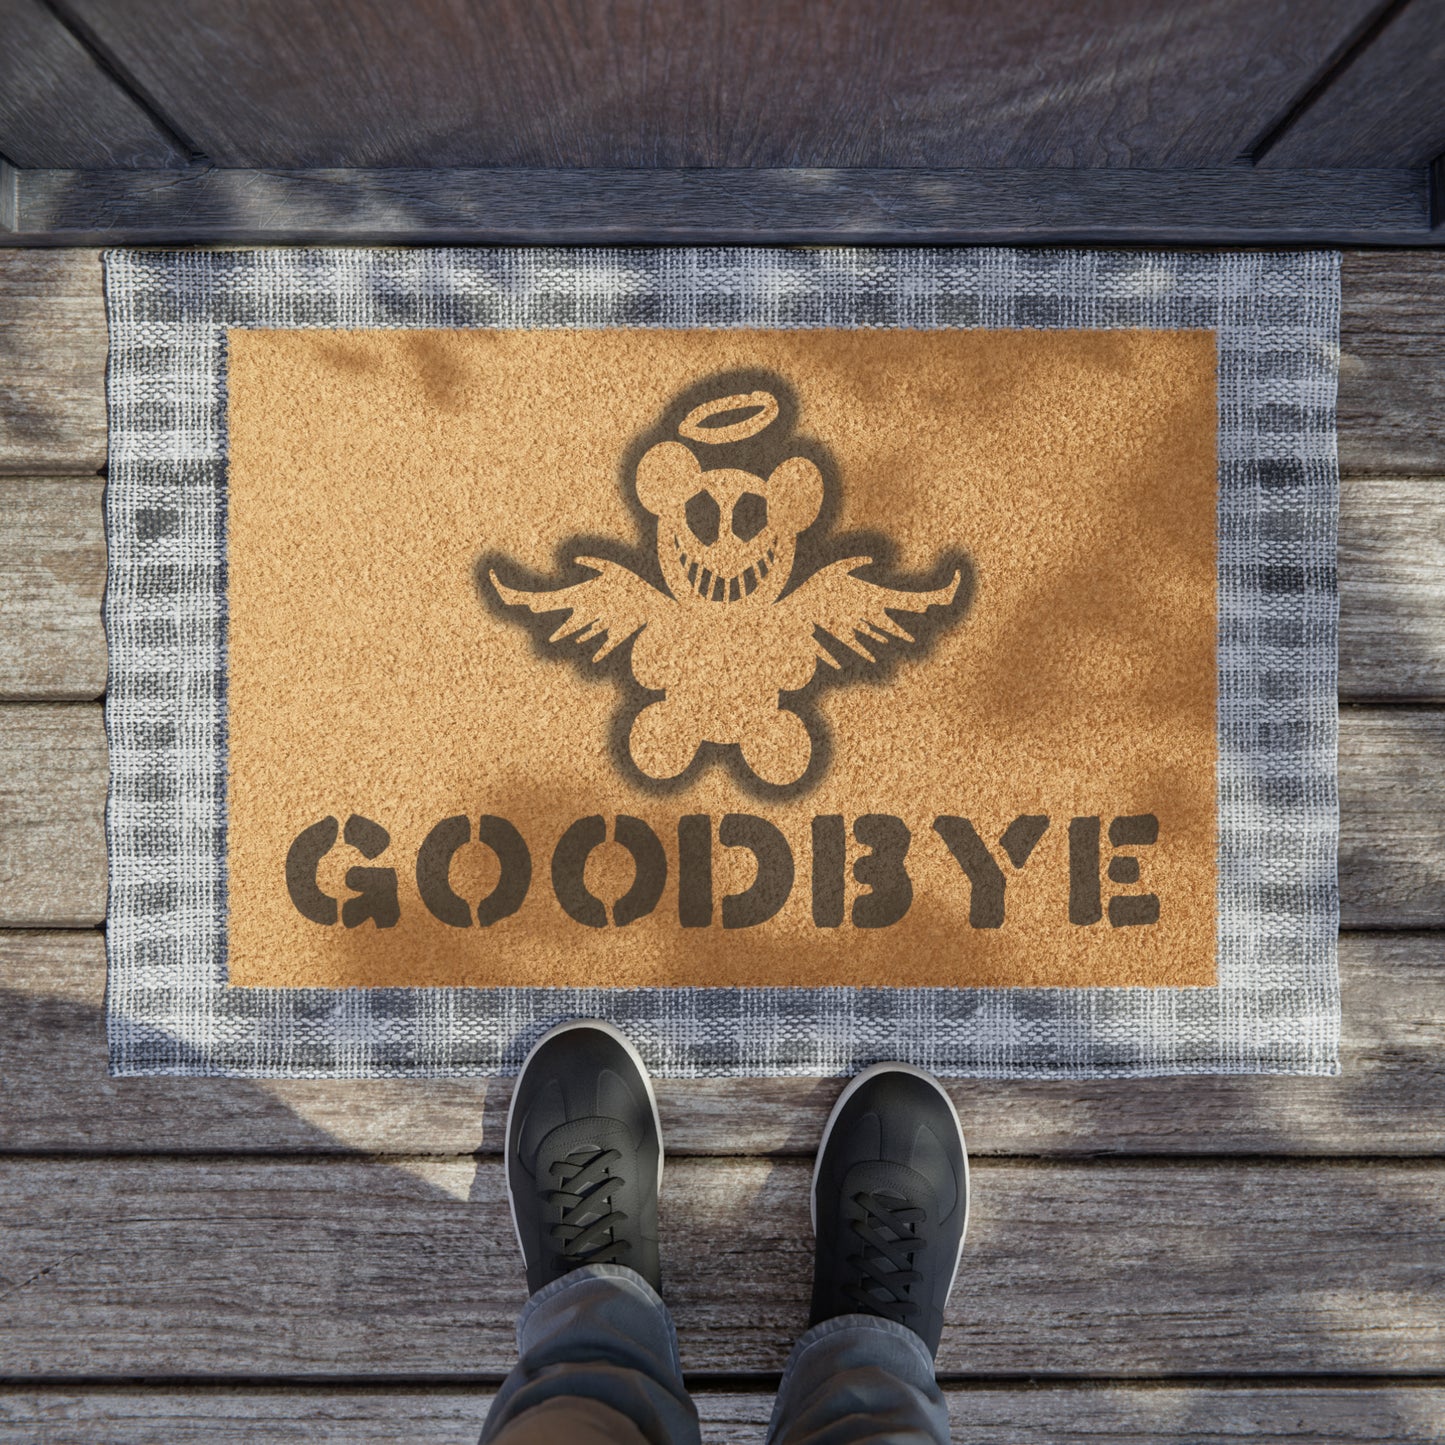 Goodbye Doormat